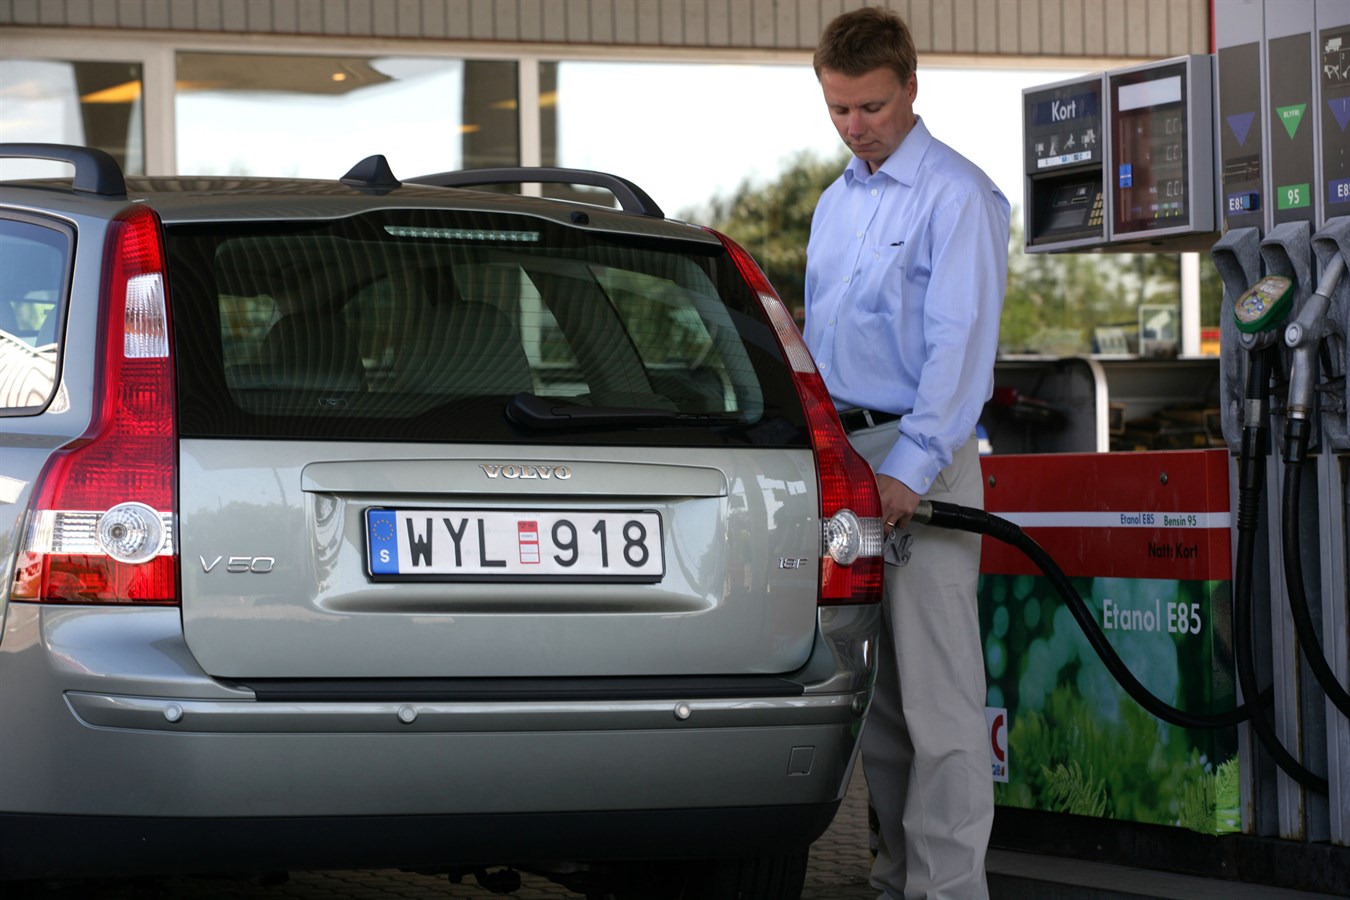 Una V50 Flexi-Fuel alimentata con E85 (85% bioetanolo e 15% benzina) (disponibile in Svezia)